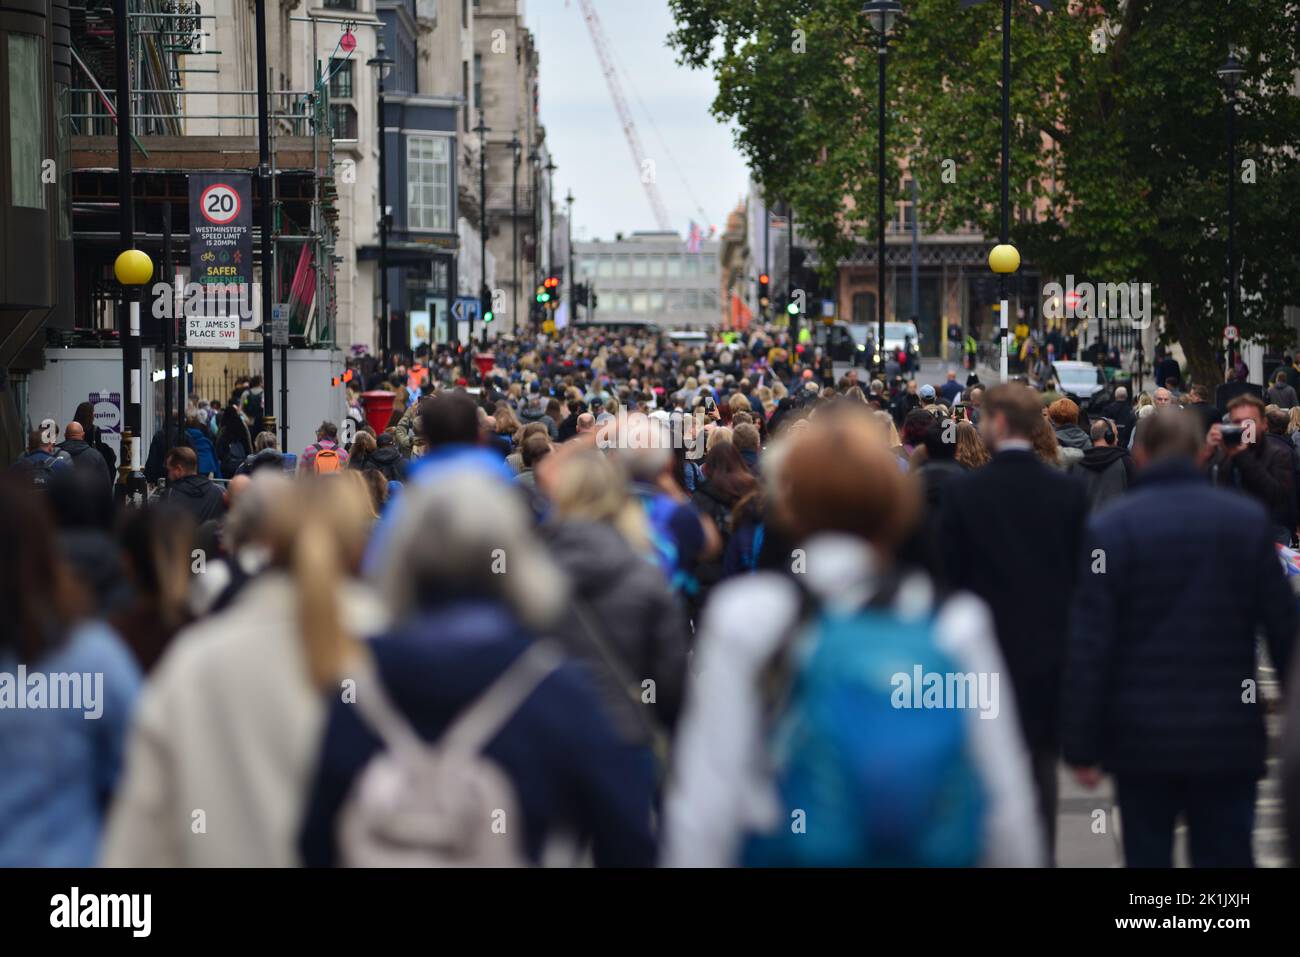 Staatsbegräbnis Ihrer Majestät Königin Elizabeth II., London, Großbritannien, Montag, 19.. September 2022. Menschenmassen machen sich auf der St. James's Street am St. James's Place vorbei auf den Weg. Stockfoto